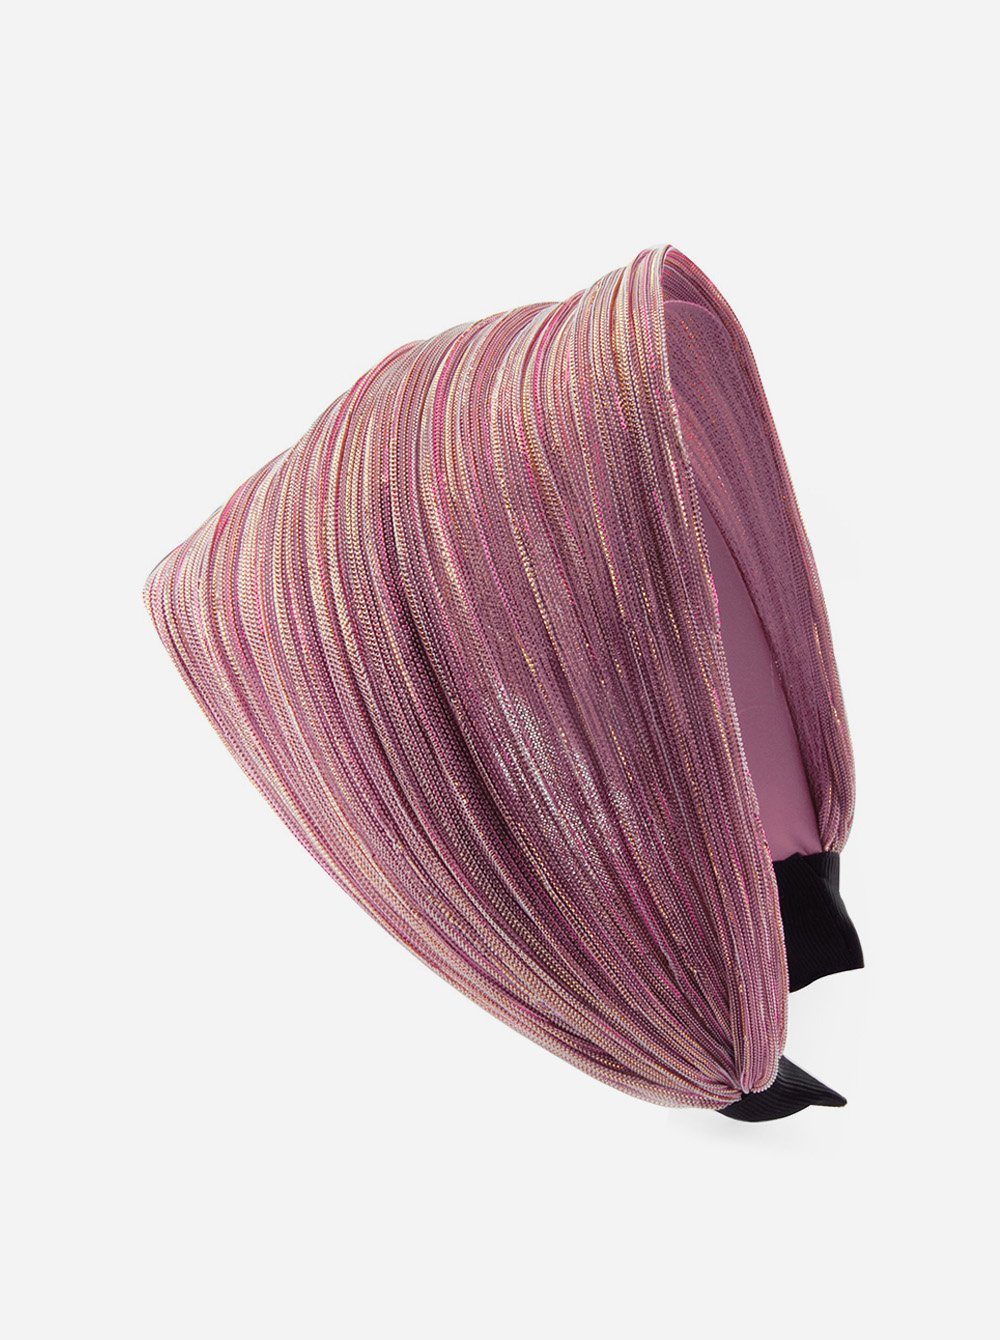 axy Haarreif Breiter Haarreif mit auffallenden Glitzerfäden in Tuchoptik, Damen Breiter Haarreif mit Glitzerfäden Haarband Haarreifen Pink